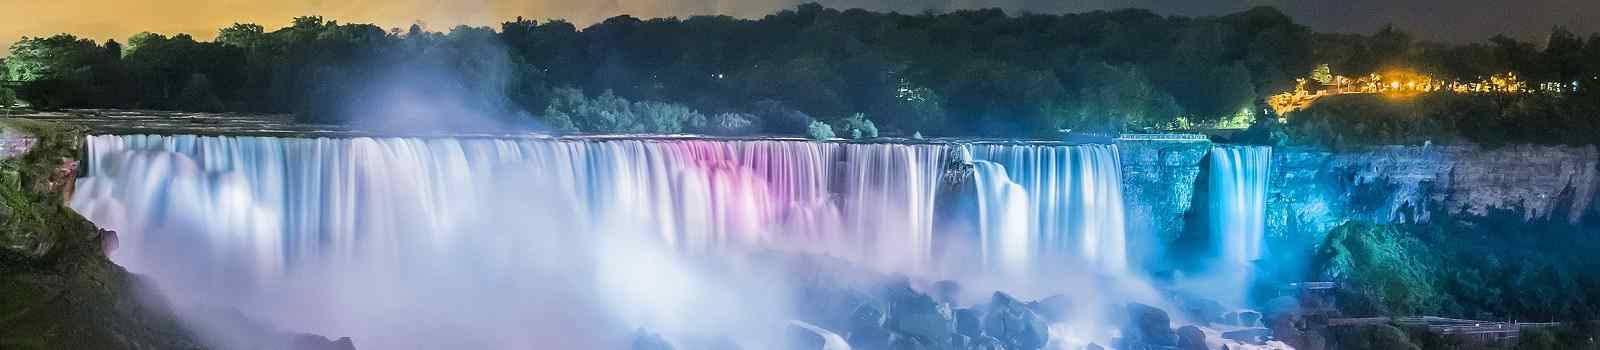 CAD-TC-TQ Niagarafaelle farbenfroh beleuchtet in der Nacht 218469484